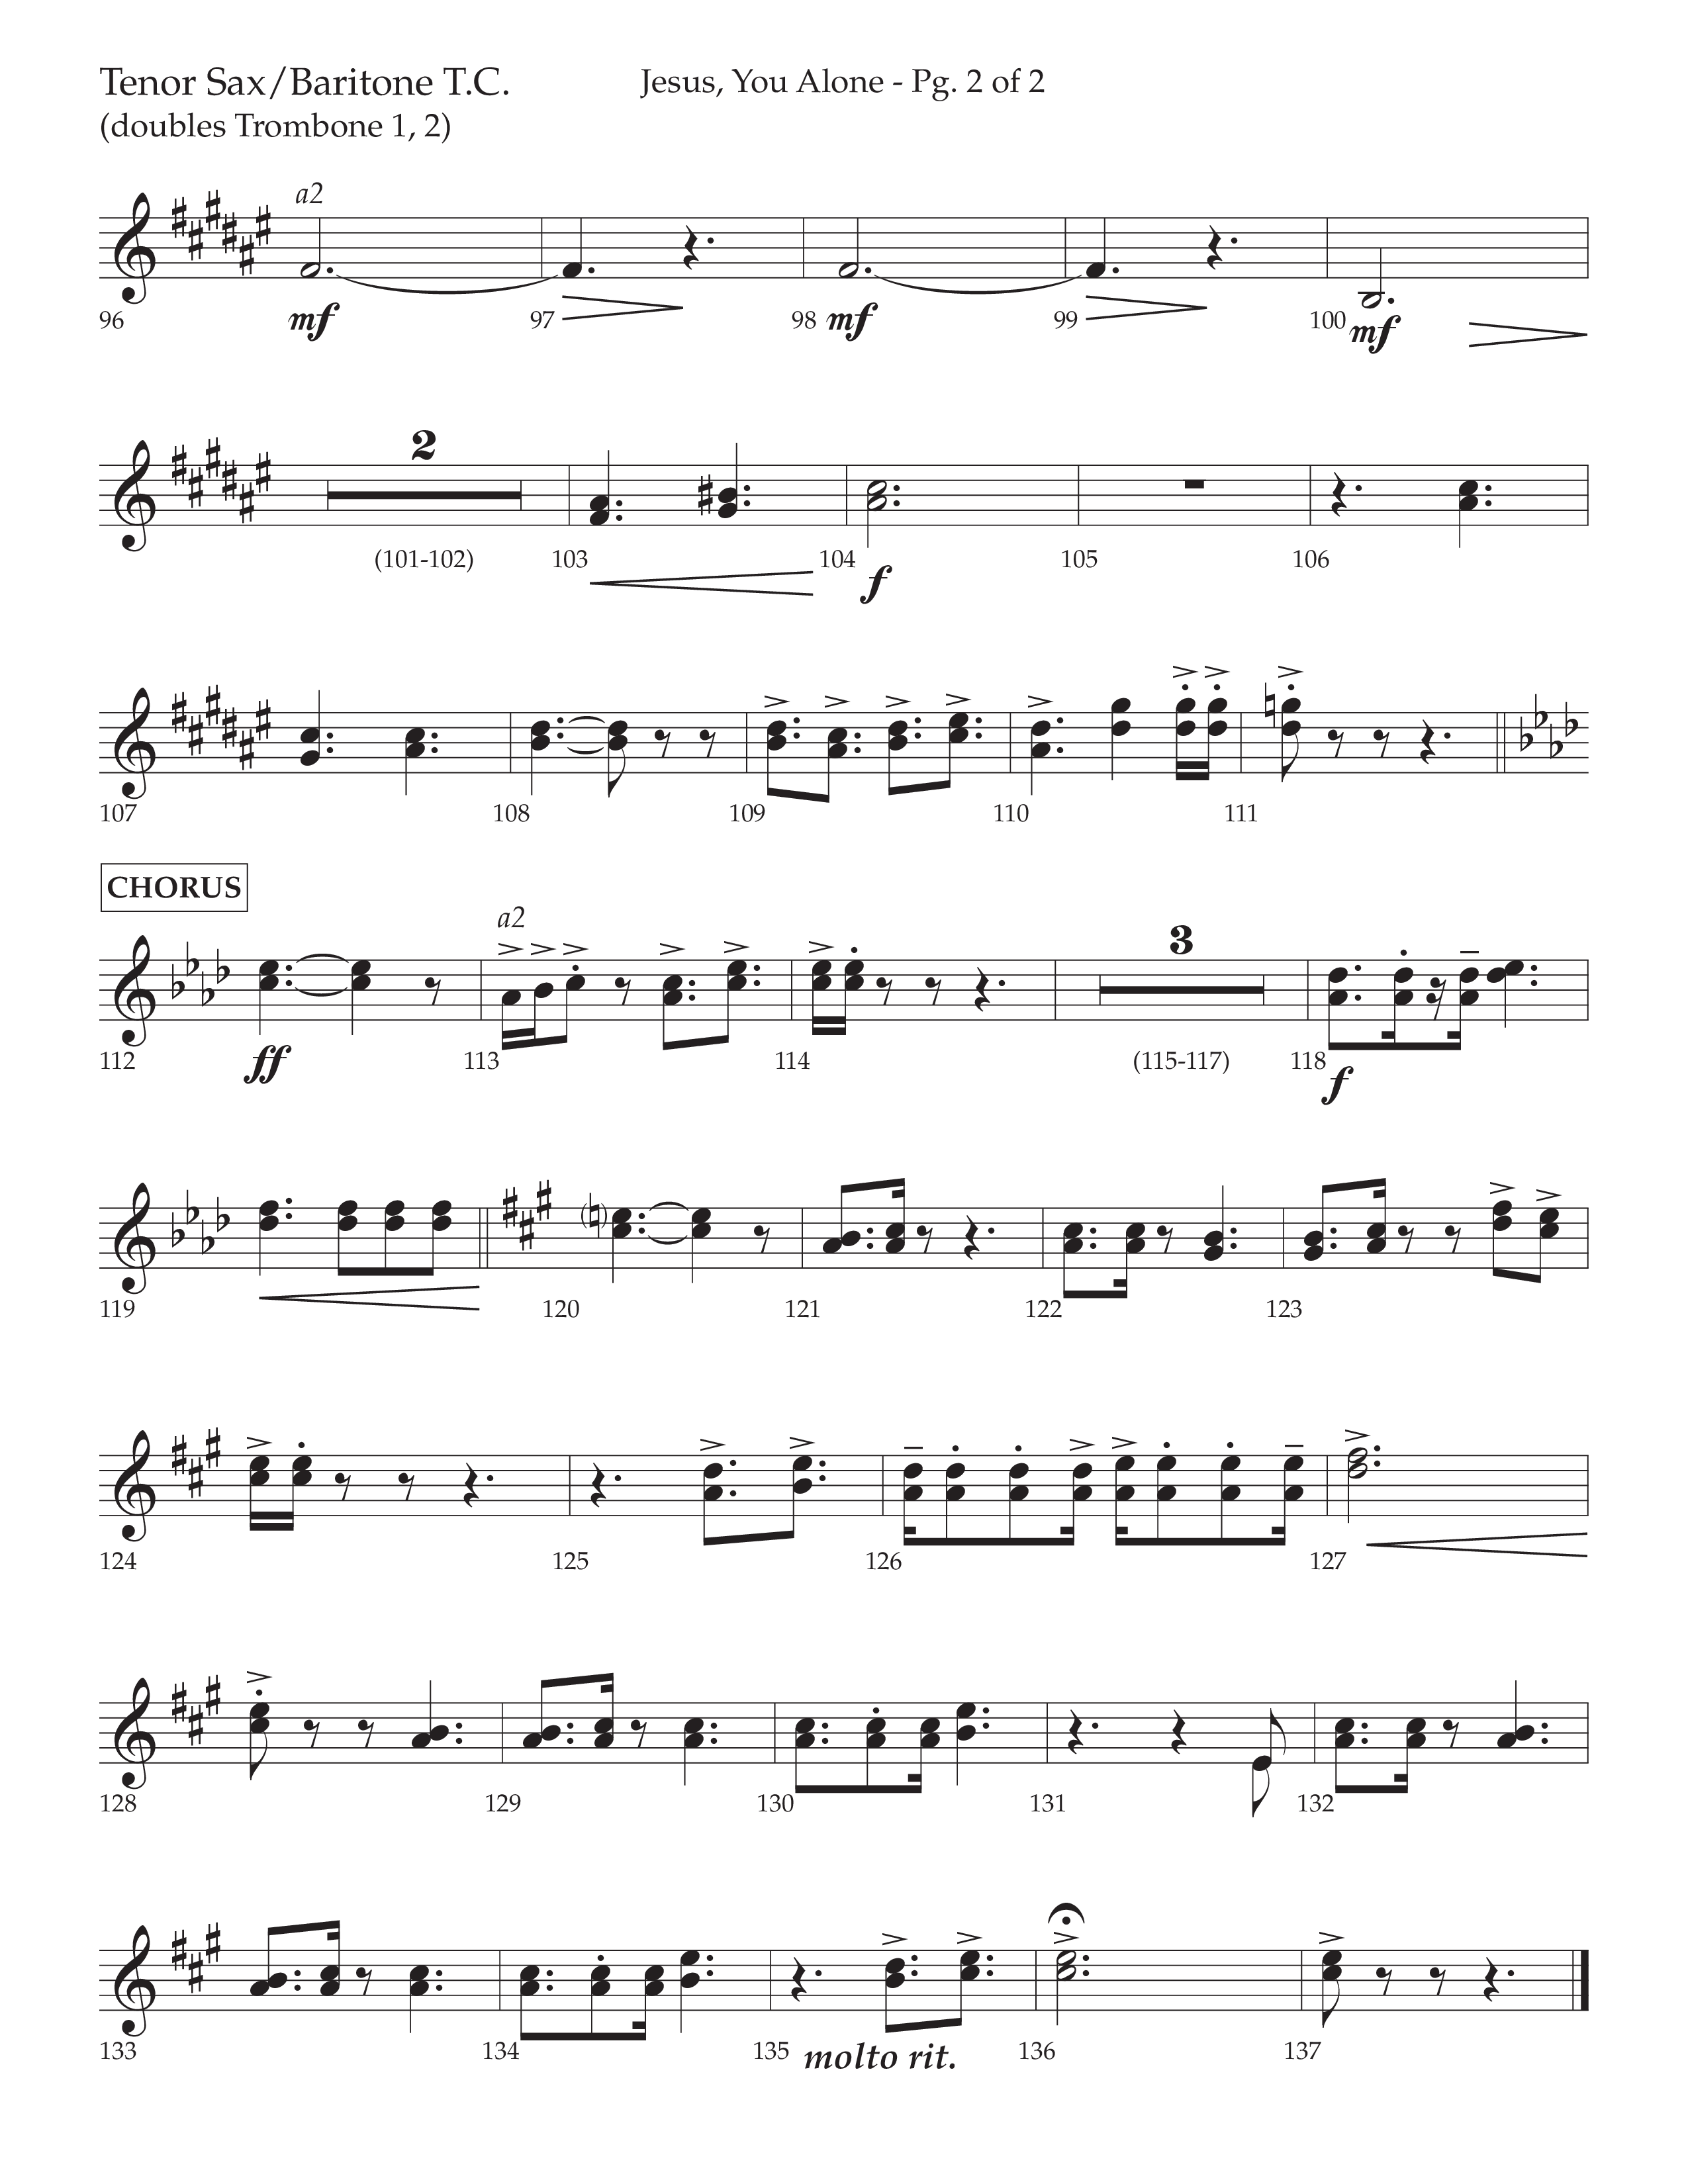 Jesus You Alone (Choral Anthem SATB) Tenor Sax/Baritone T.C. (Lifeway Choral / Arr. David Wise / Orch. Bradley Knight)